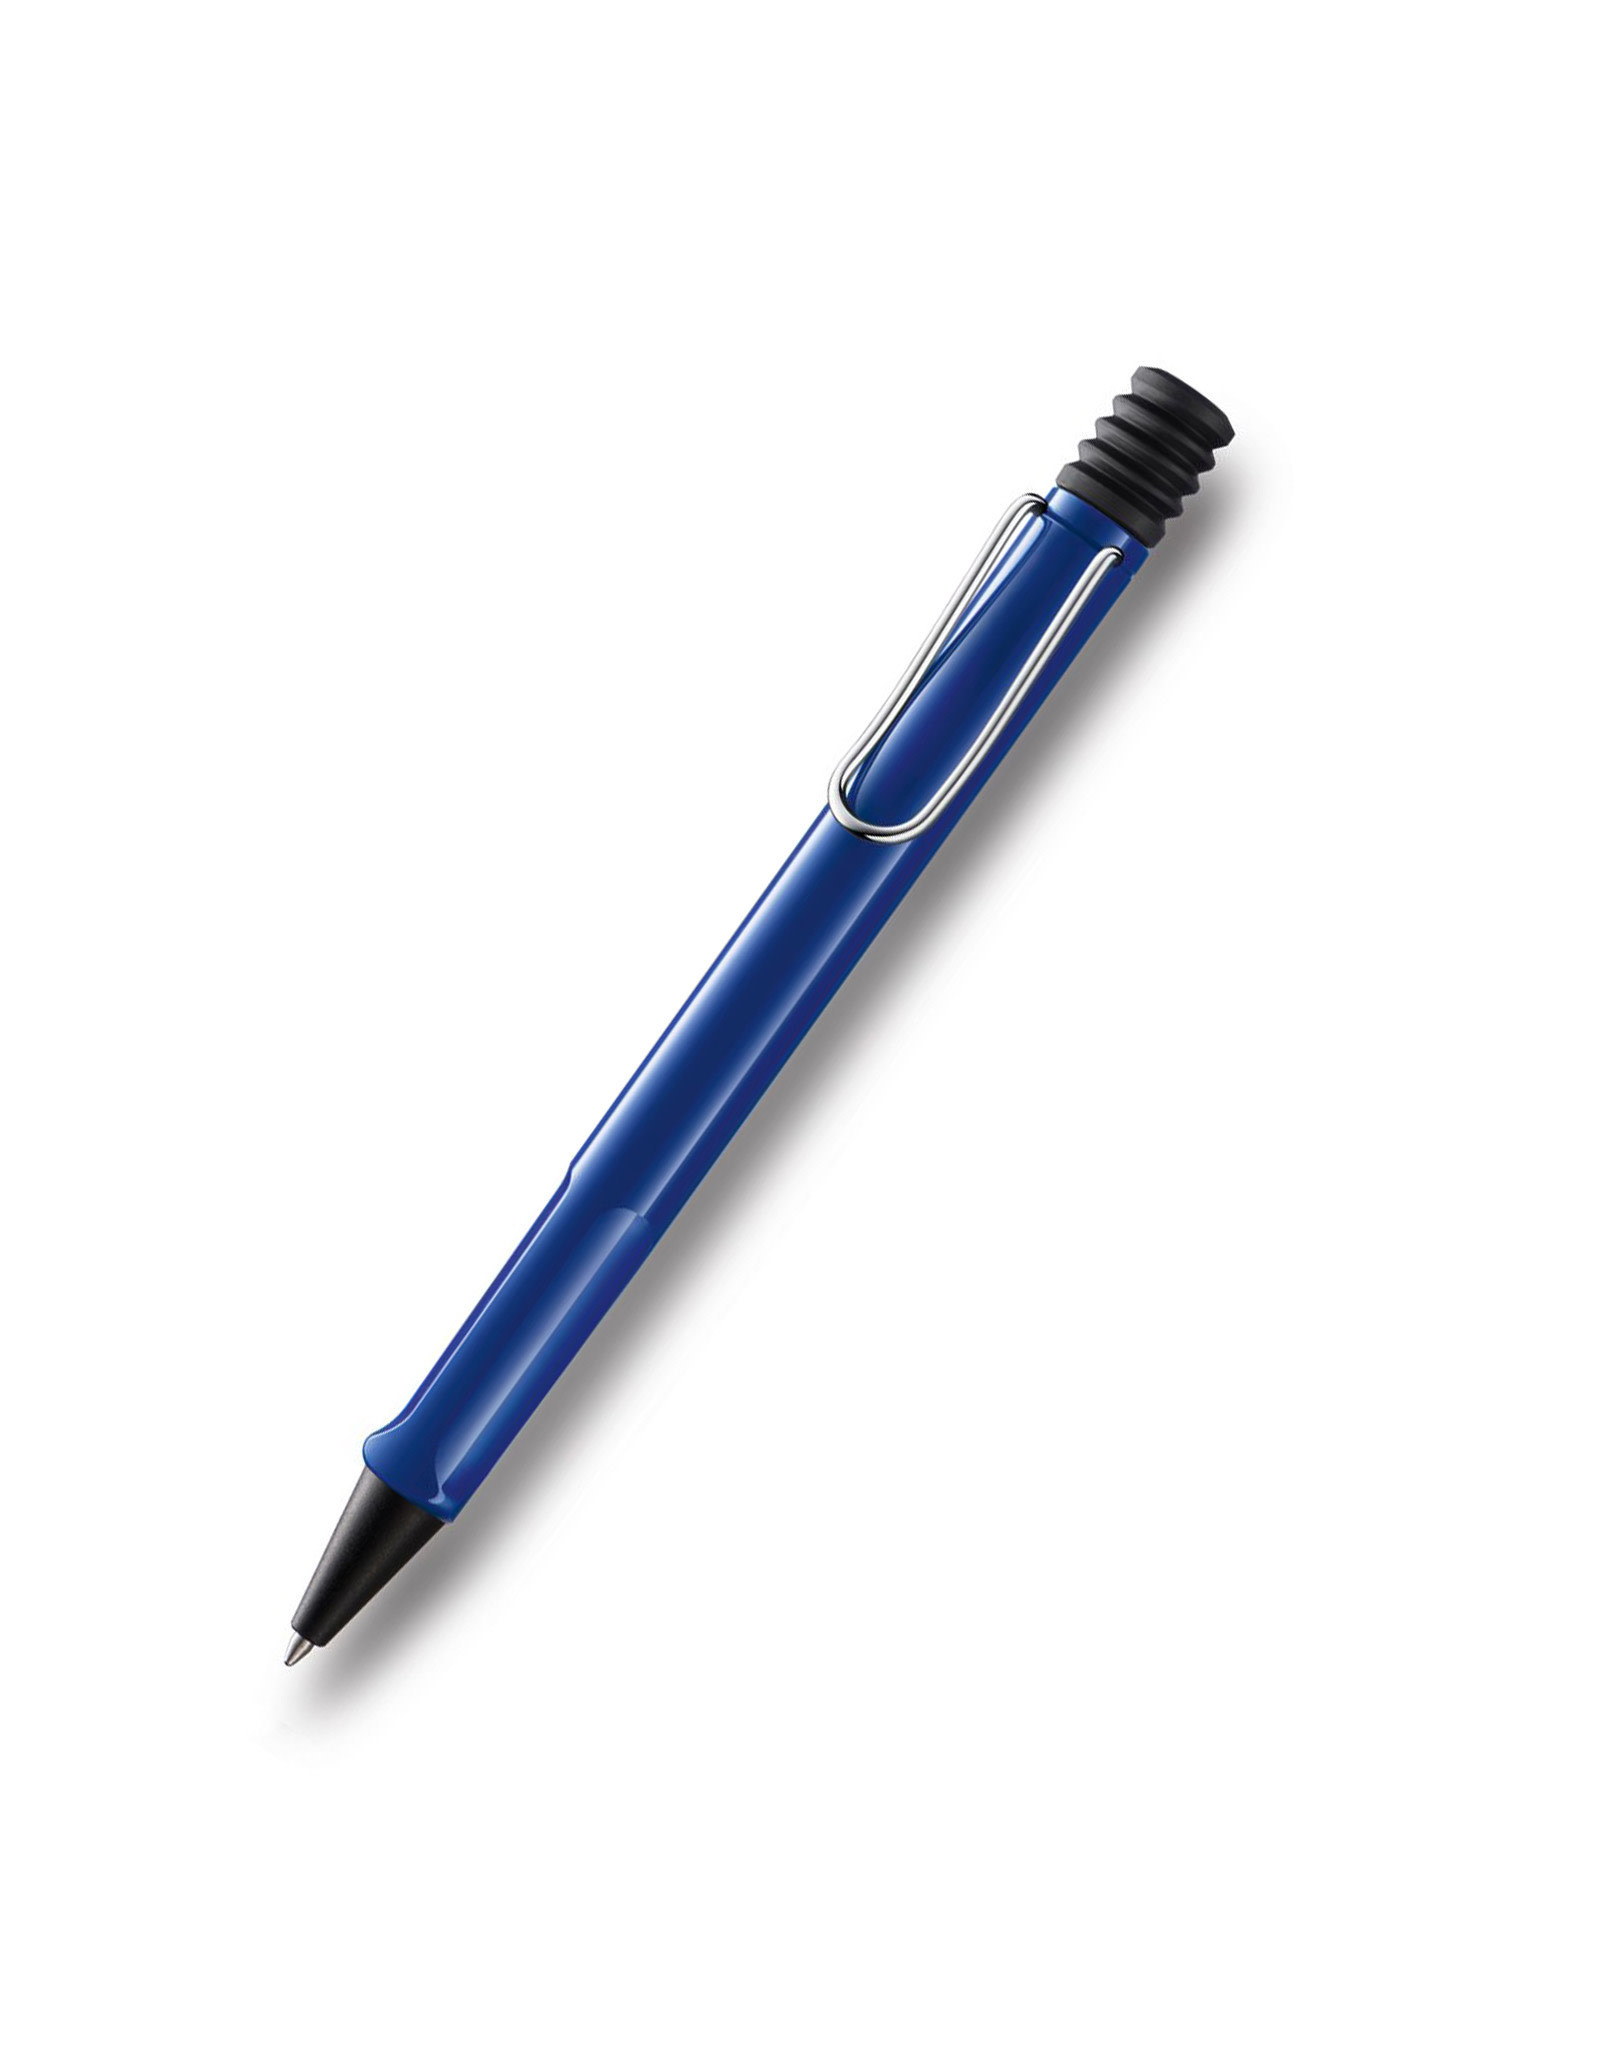 LAMY LAMY Safari Ballpoint Pen, Blue